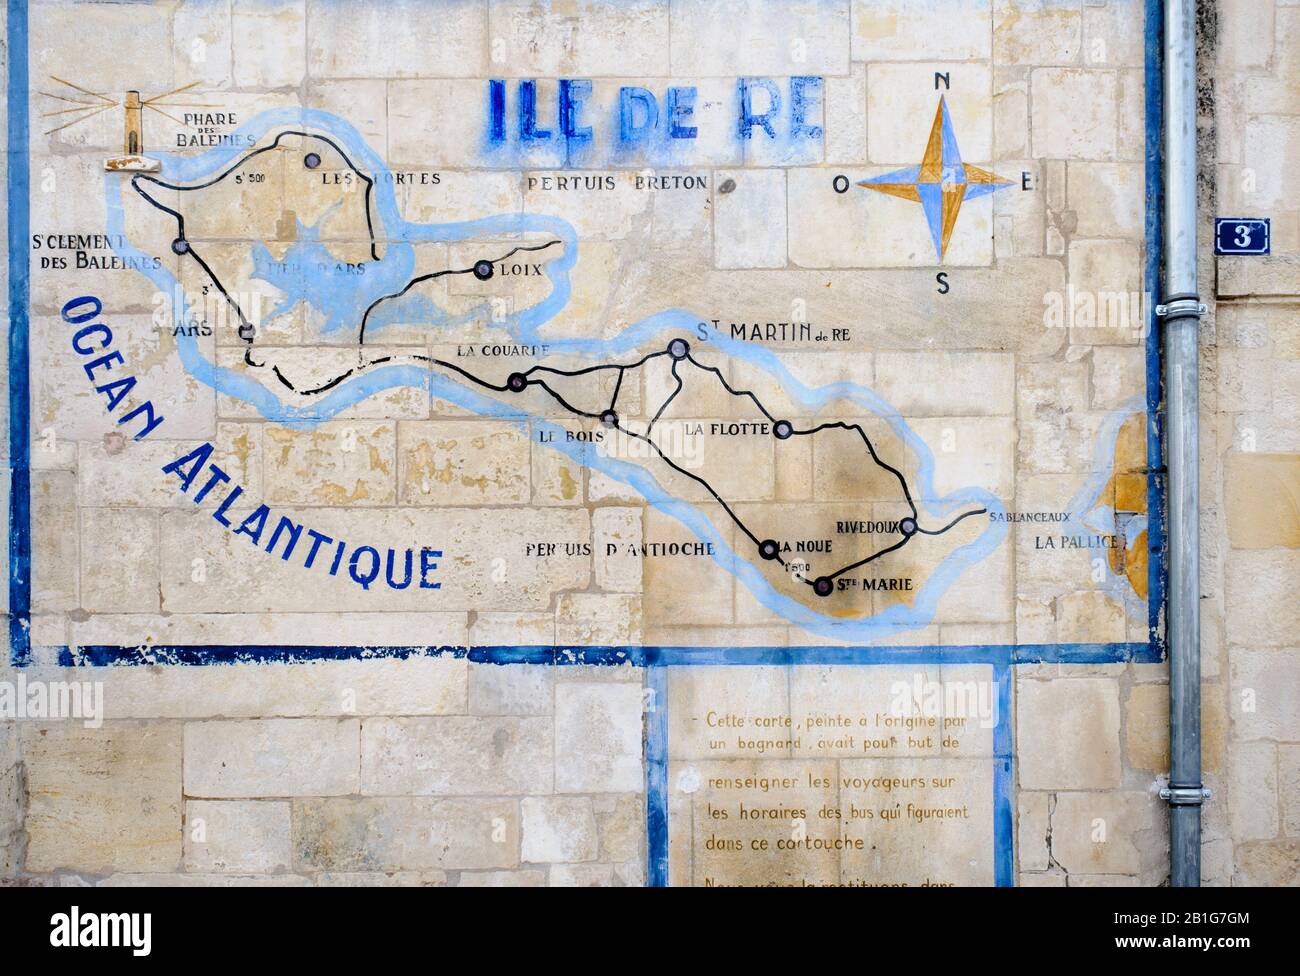 Map of Ile de Ré in stone building, Saint-Martin-de-Ré on the island Ile de Ré, Charente-Maritime, France Stock Photo